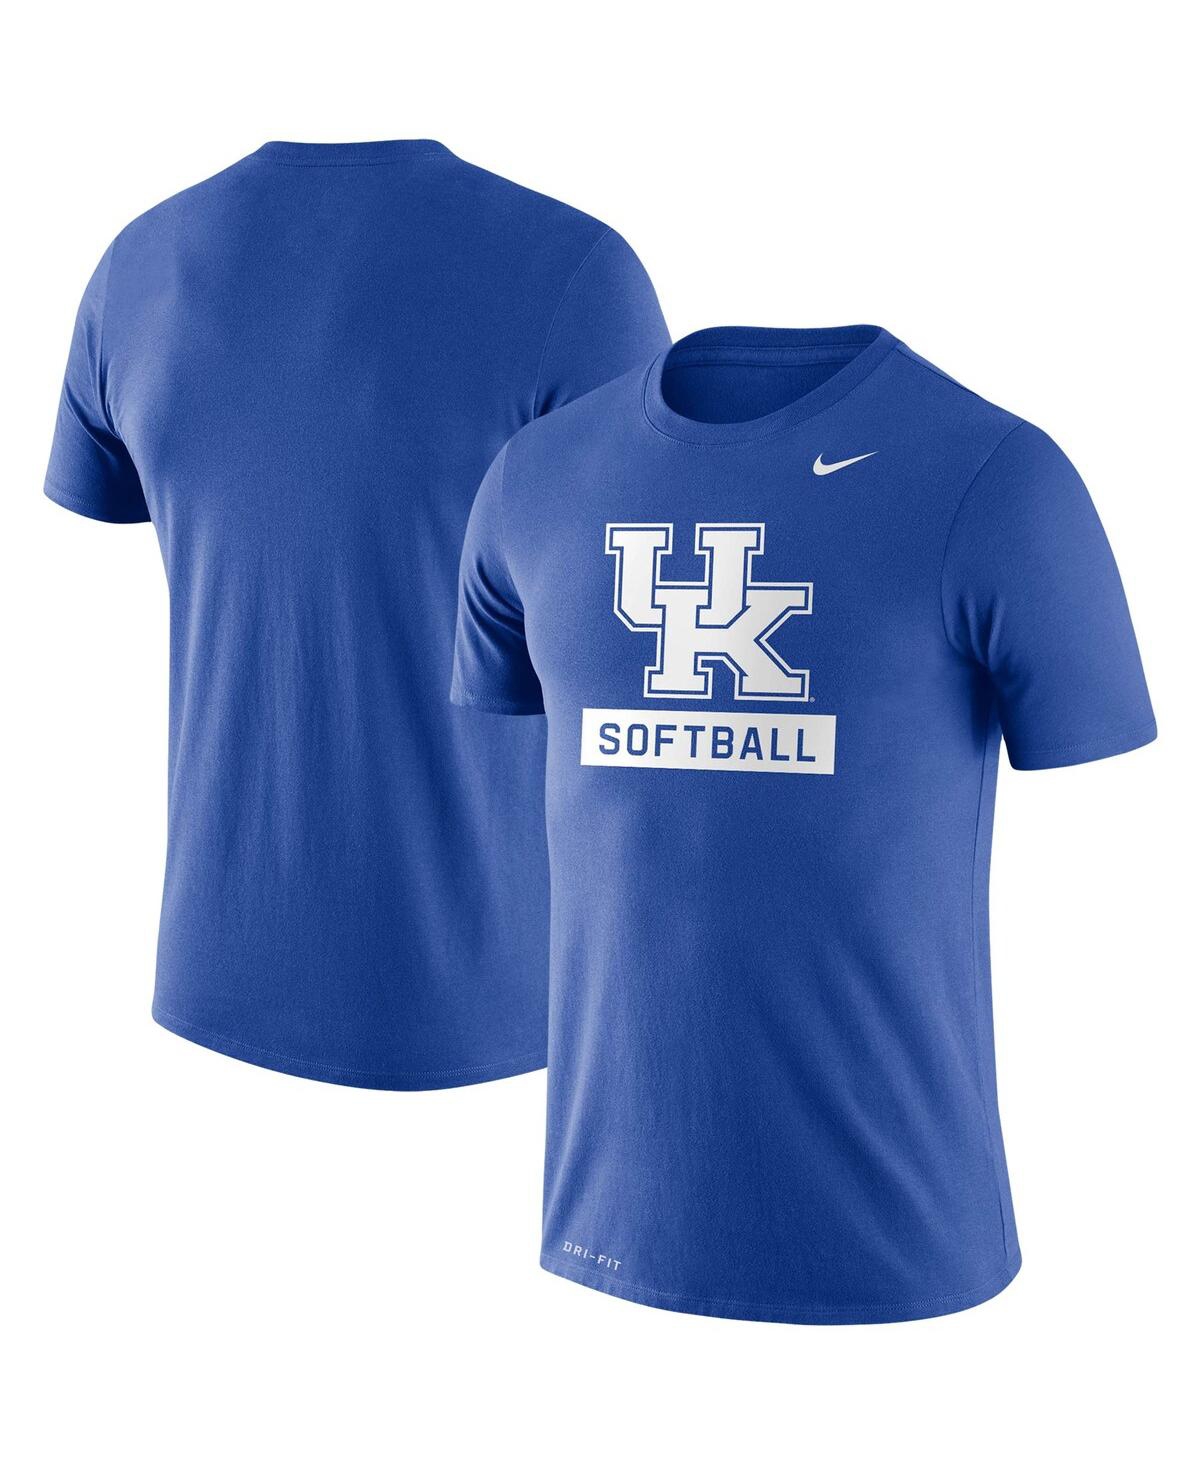 Shop Nike Men's  Royal Kentucky Wildcats Softball Drop Legend Performance T-shirt